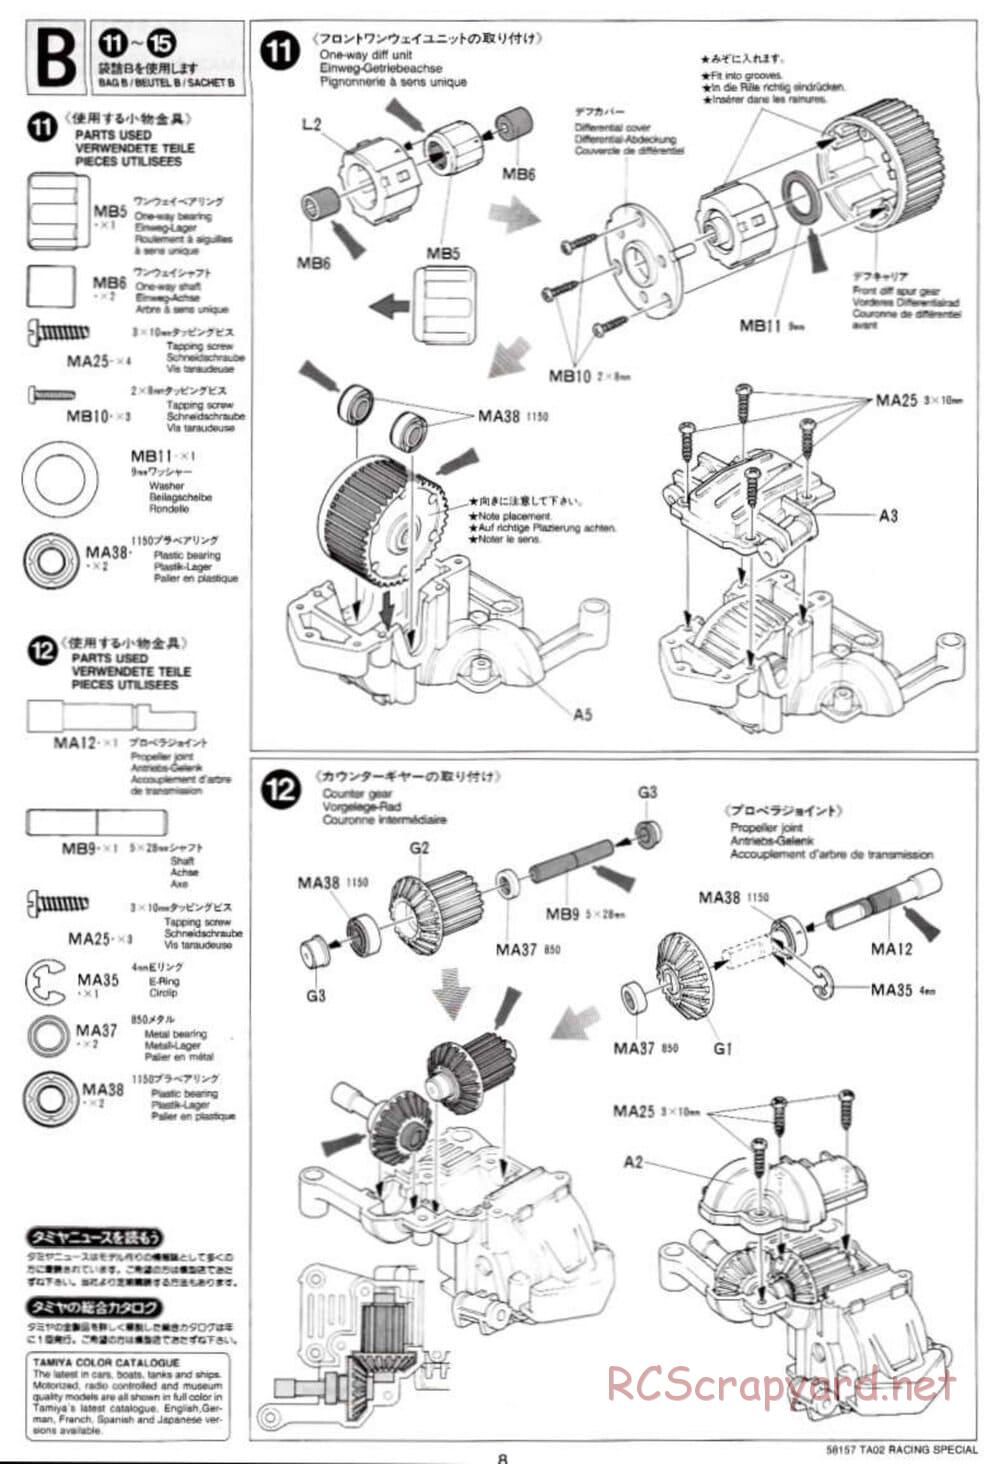 Tamiya - TA-02RS Chassis - Manual - Page 8